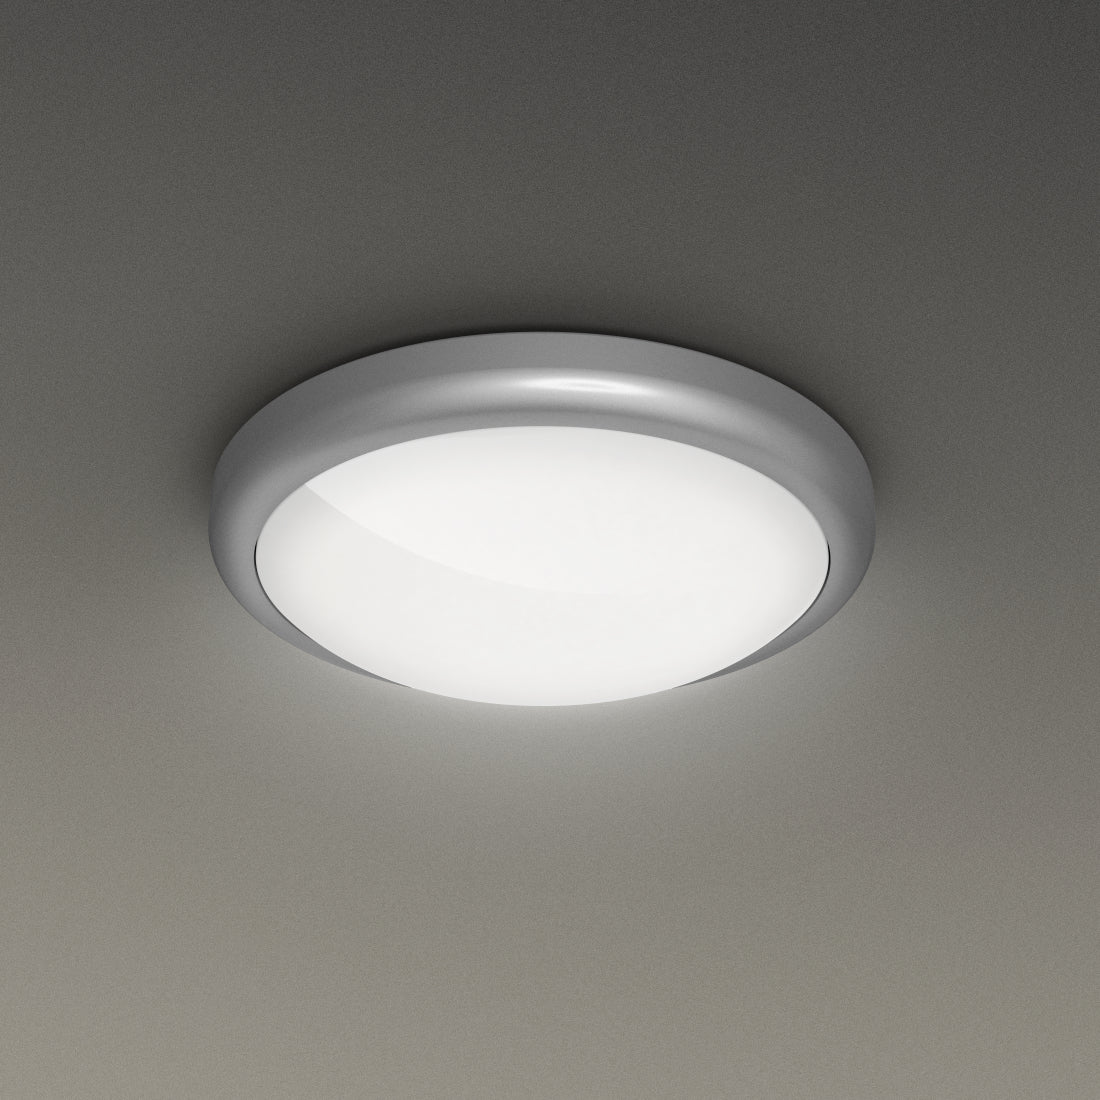 HAMA WiFi round ceiling light, Ø 33 cm, 1300 Im, 15W